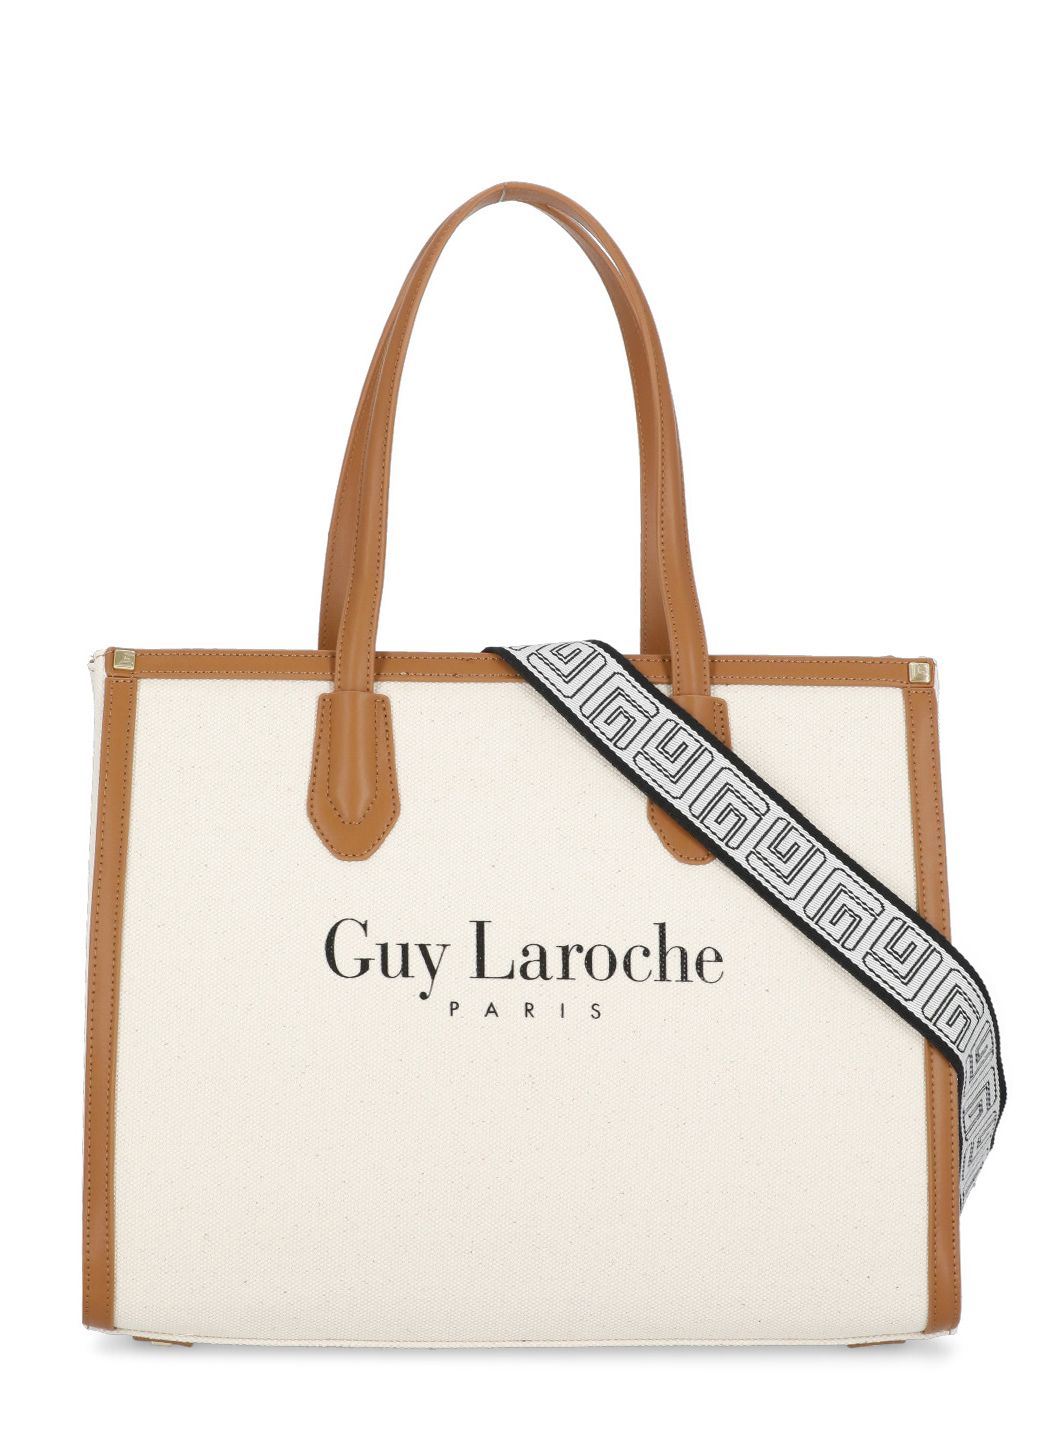 Guy Laroche, Bags, Guy Laroche Brown Suede Bag